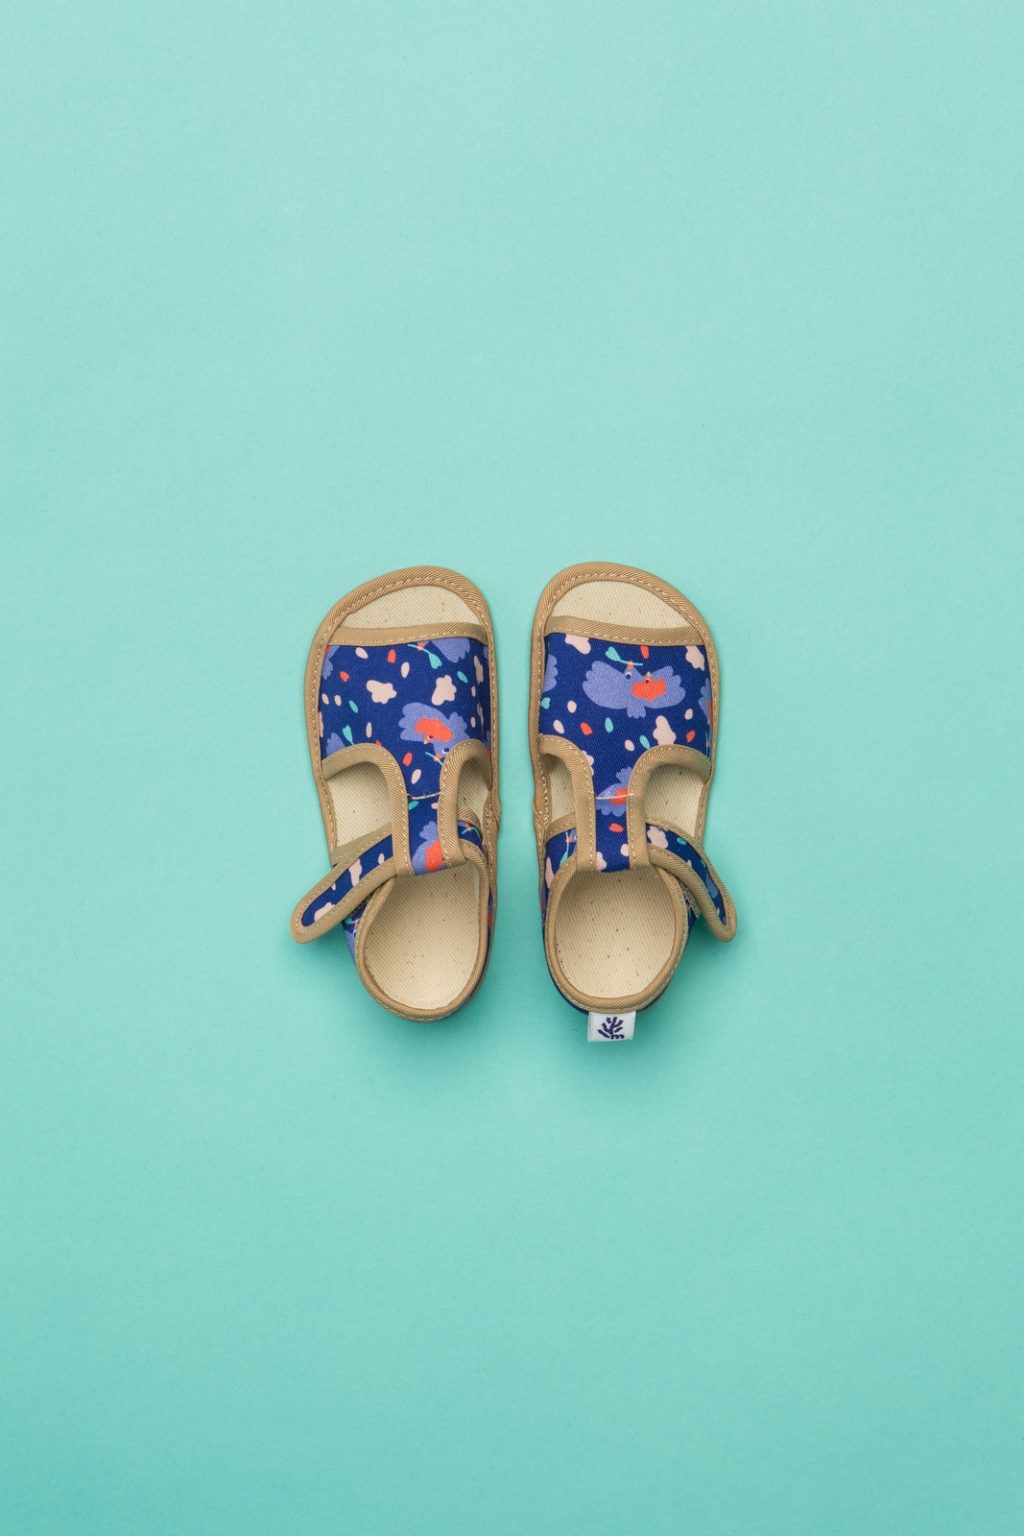 Milash sisejalats Tuvi- Sinine Laste barefoot jalatsid - HellyK - Kvaliteetsed lasteriided, villariided, barefoot jalatsid